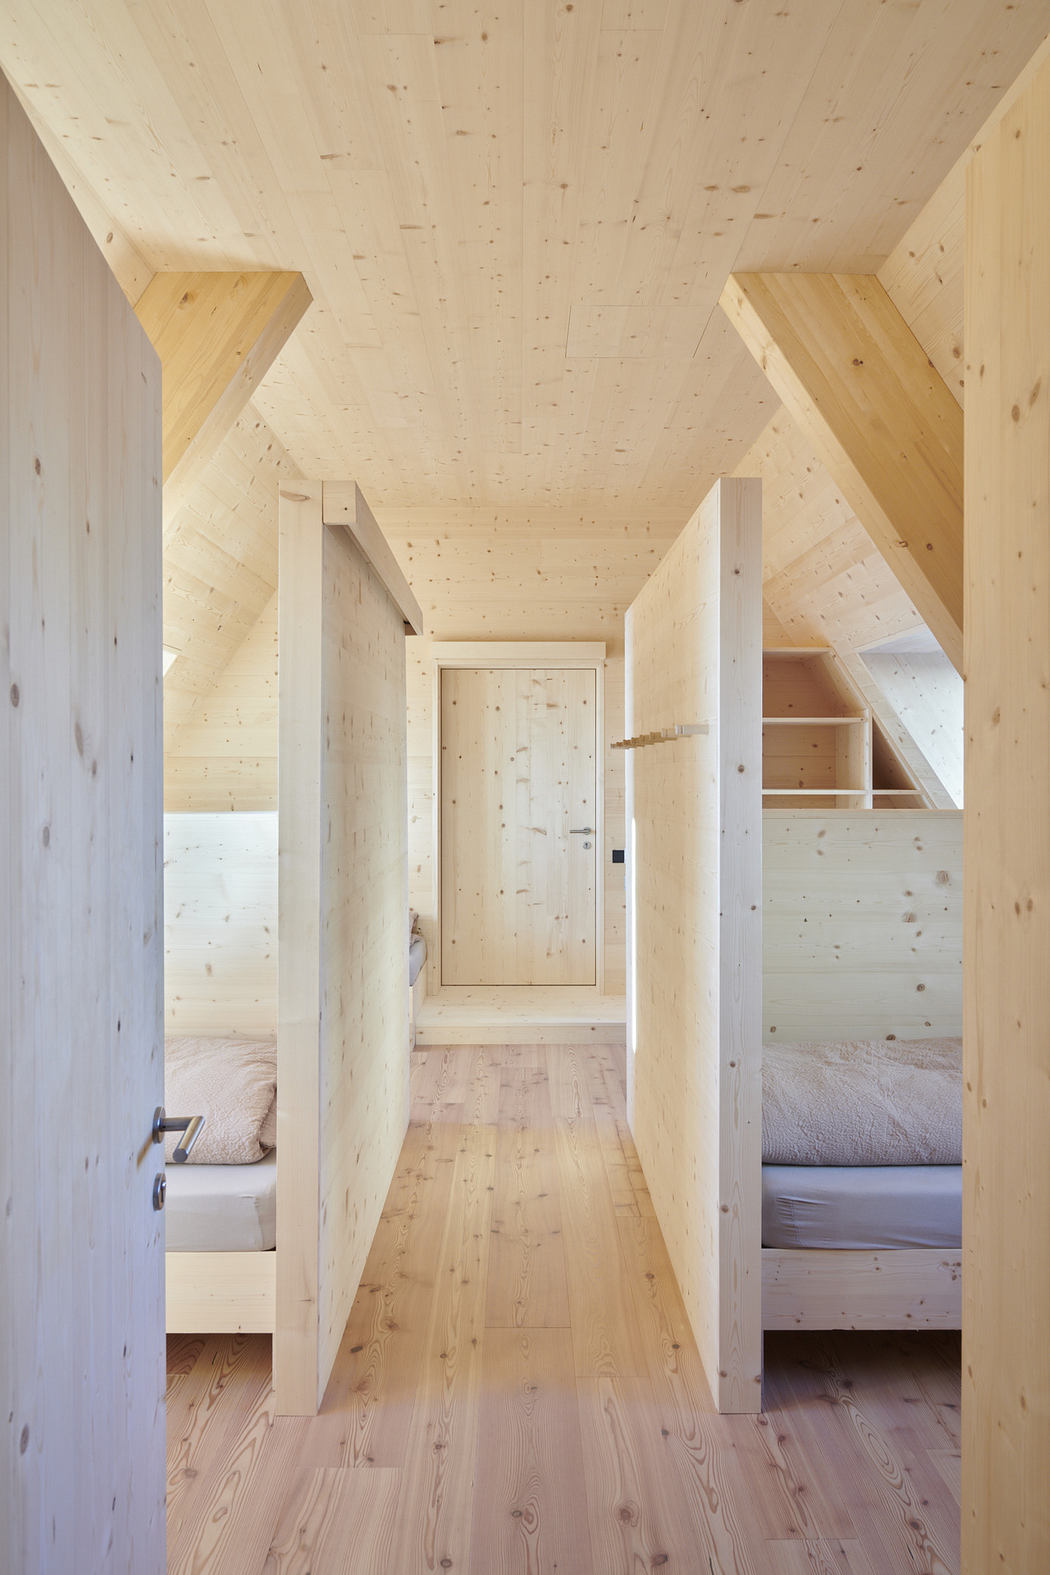 Minimalist wooden interior hallway with bedrooms.